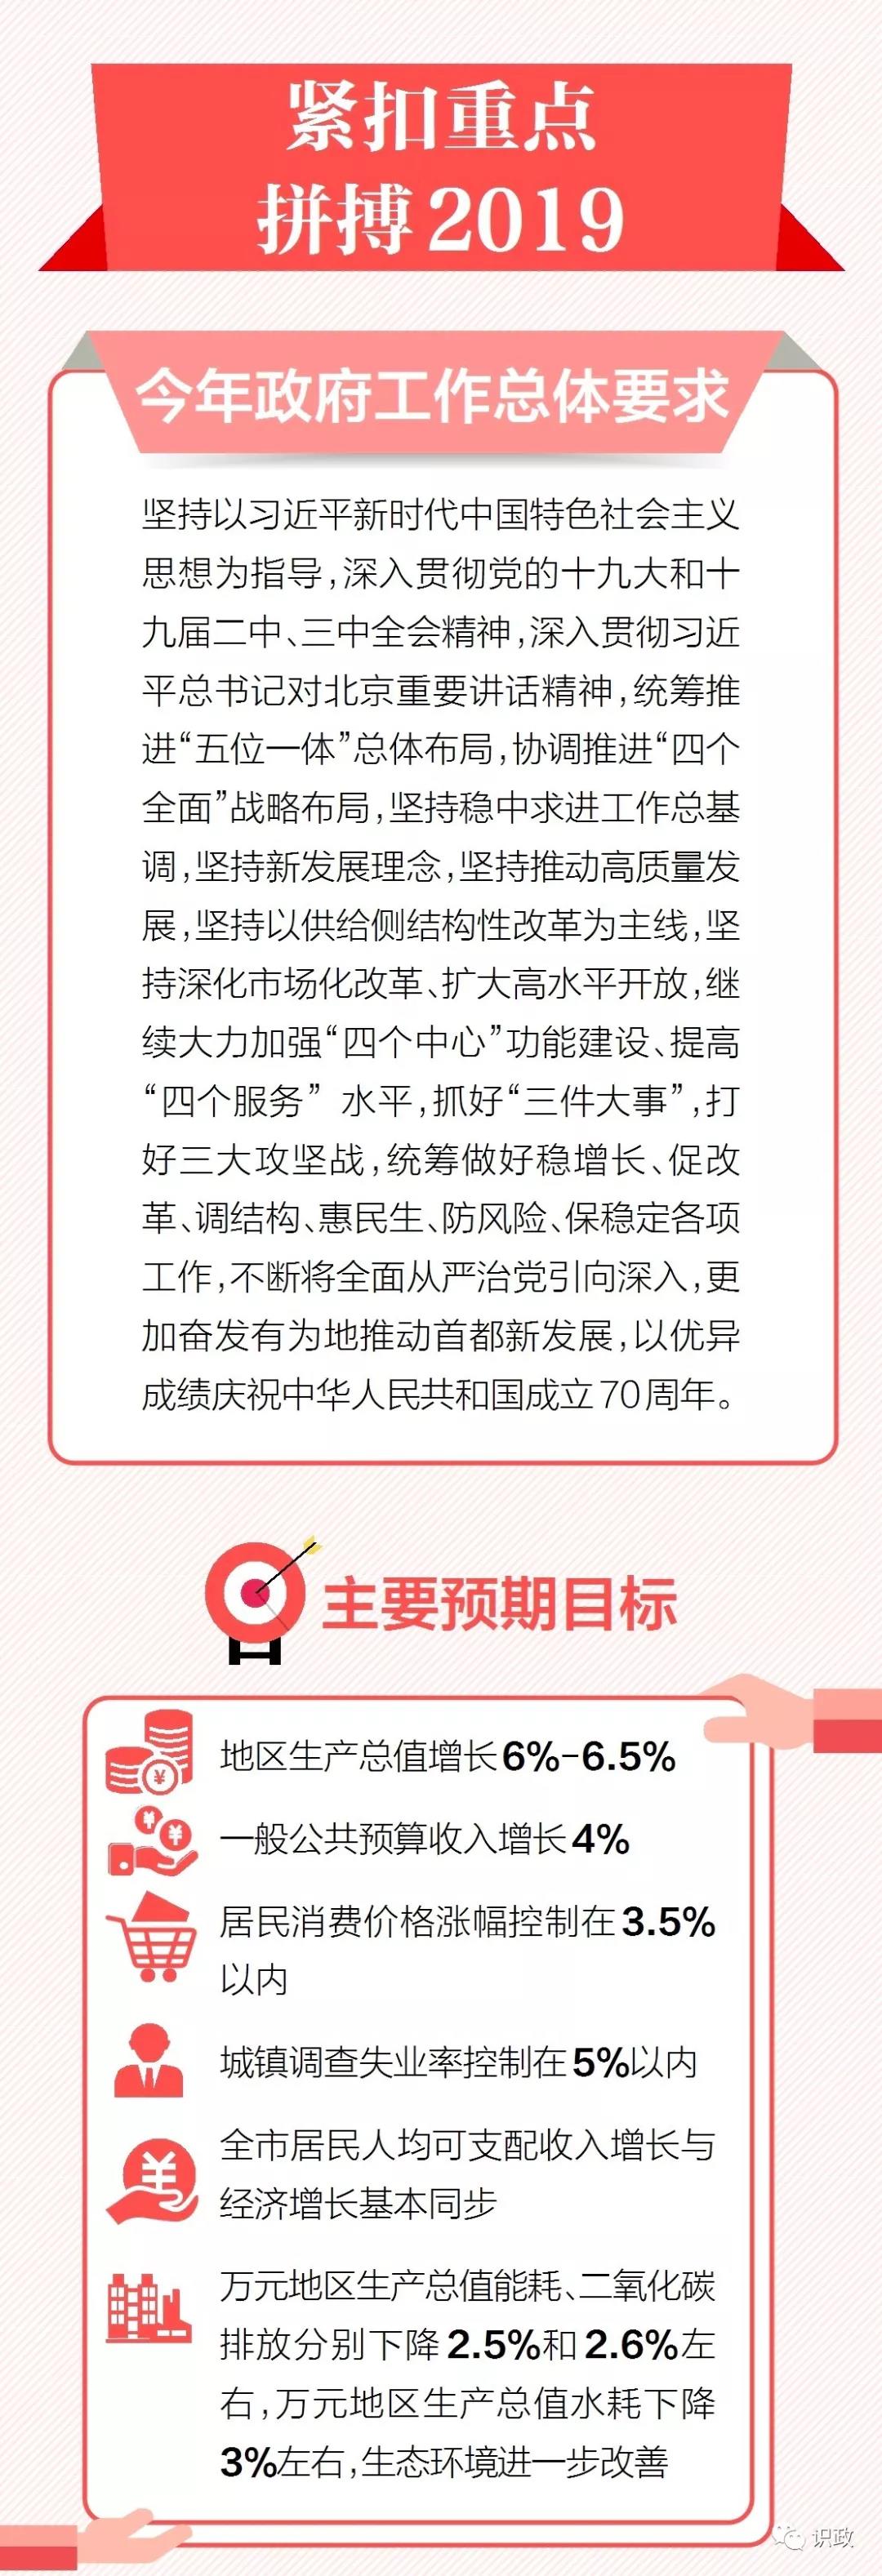 一图读懂北京市政府工作报告-中国网地产